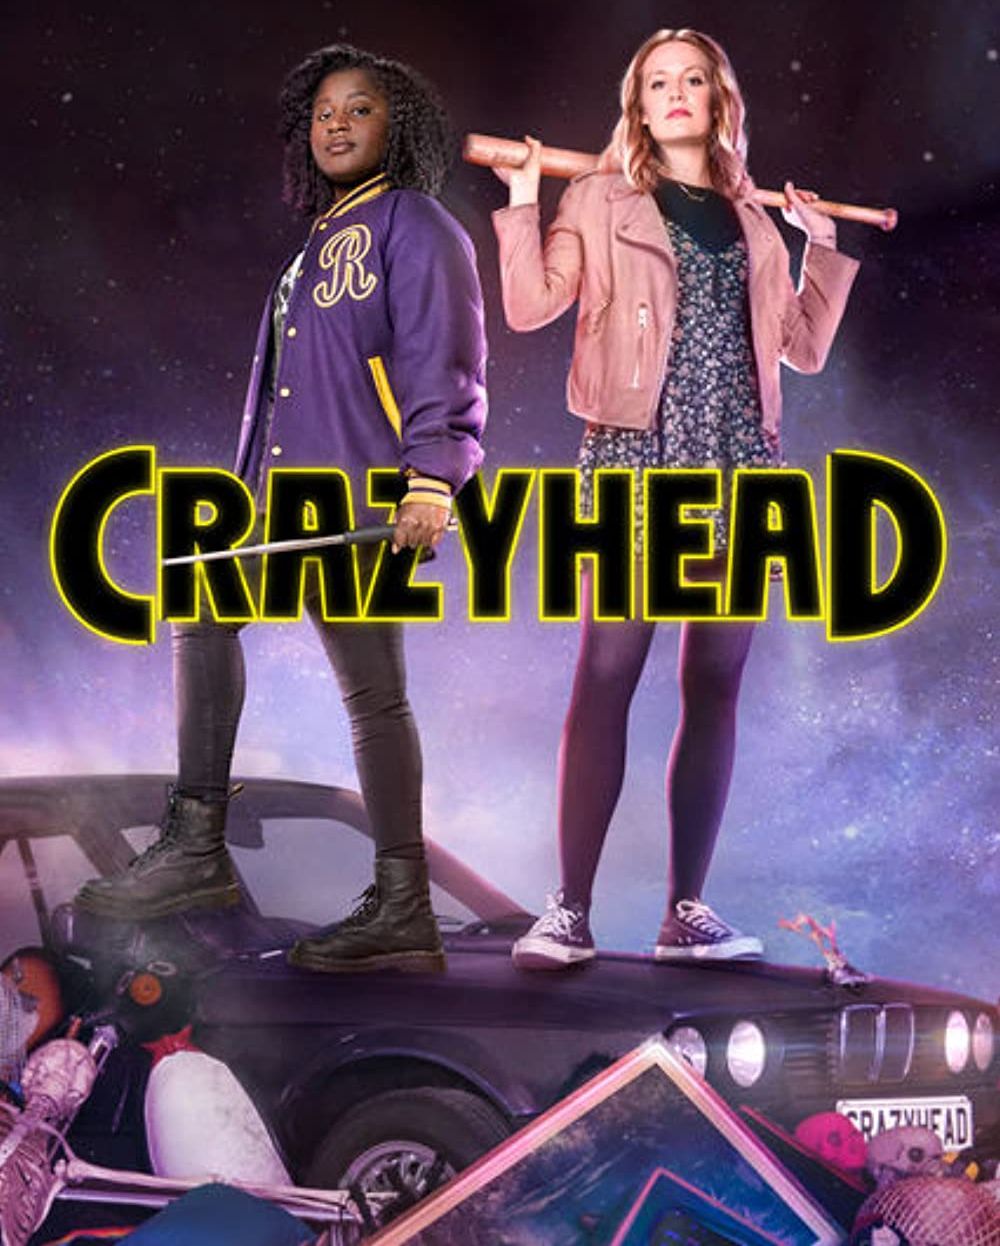 Crazyhead (2016)